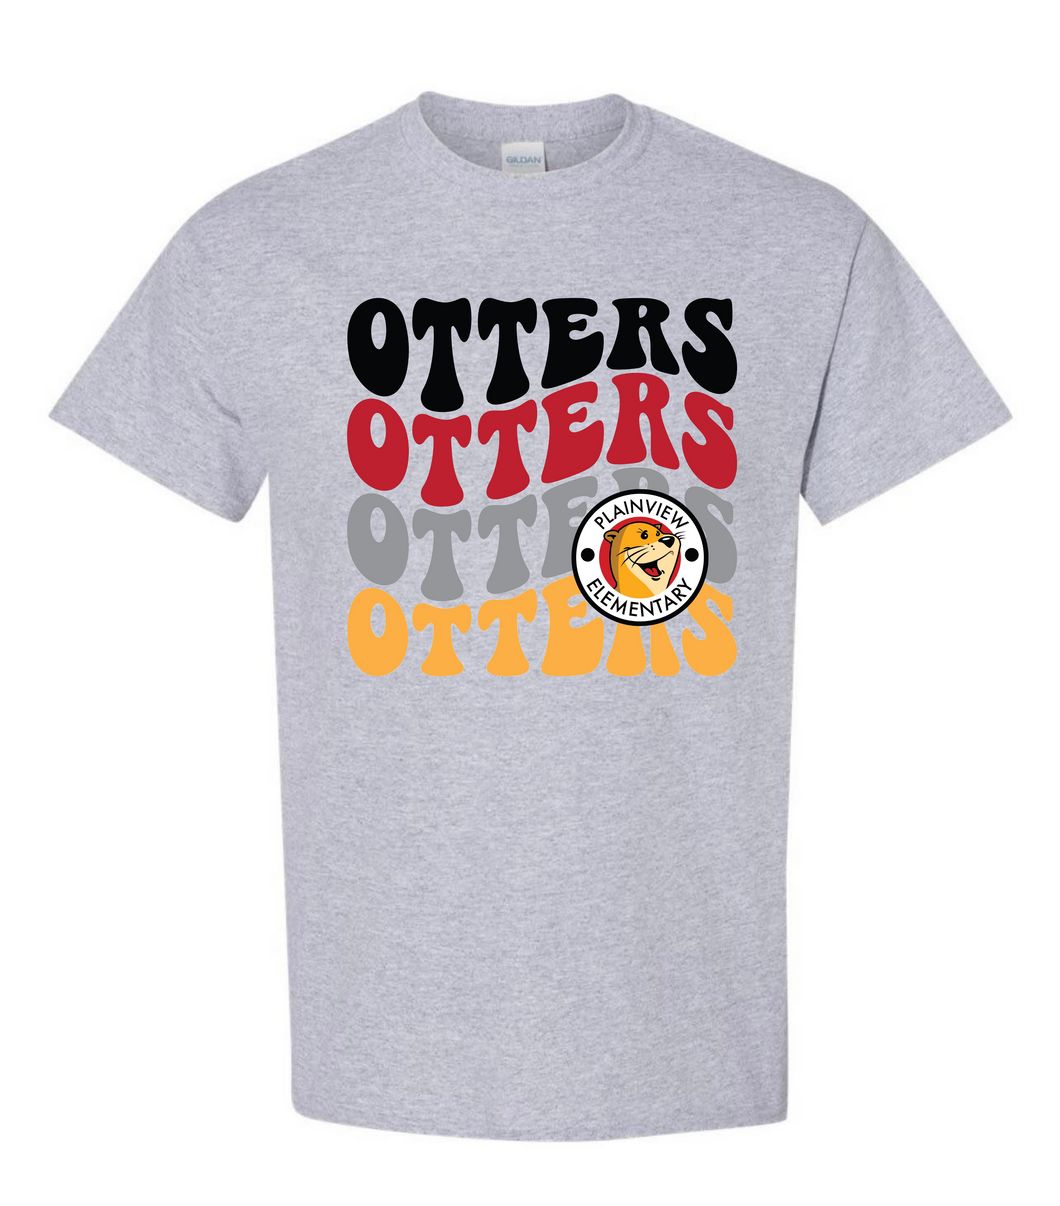 Retro Otters Tshirt